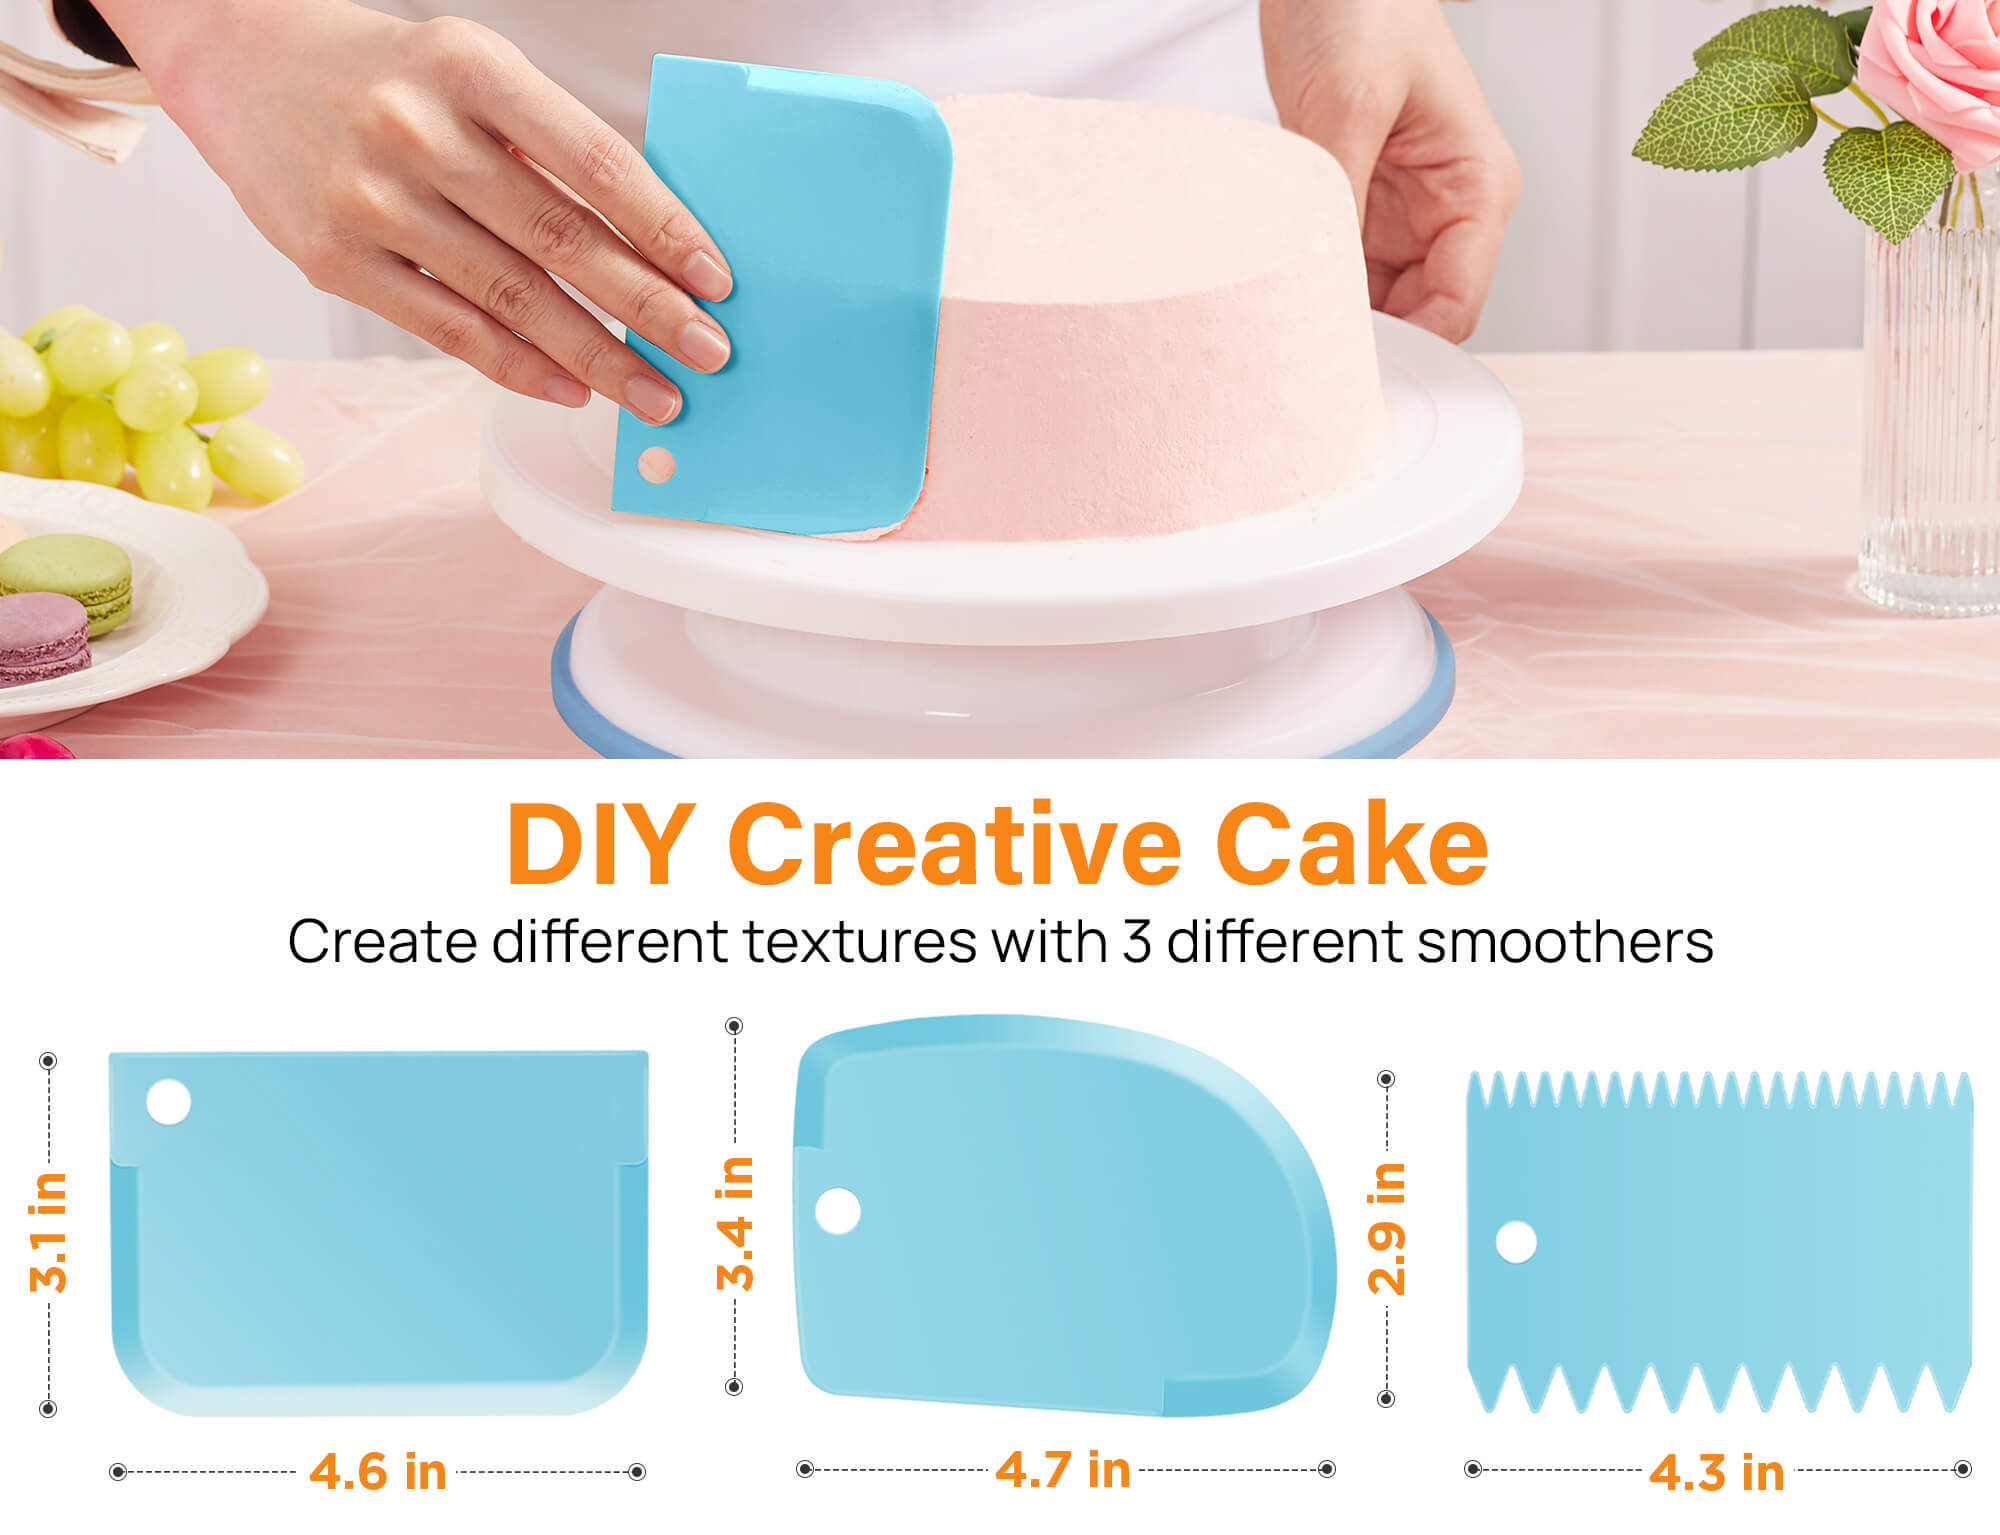 Kootek 71PCs Cake Decorating Supplies Kit, Cake Decorating Set